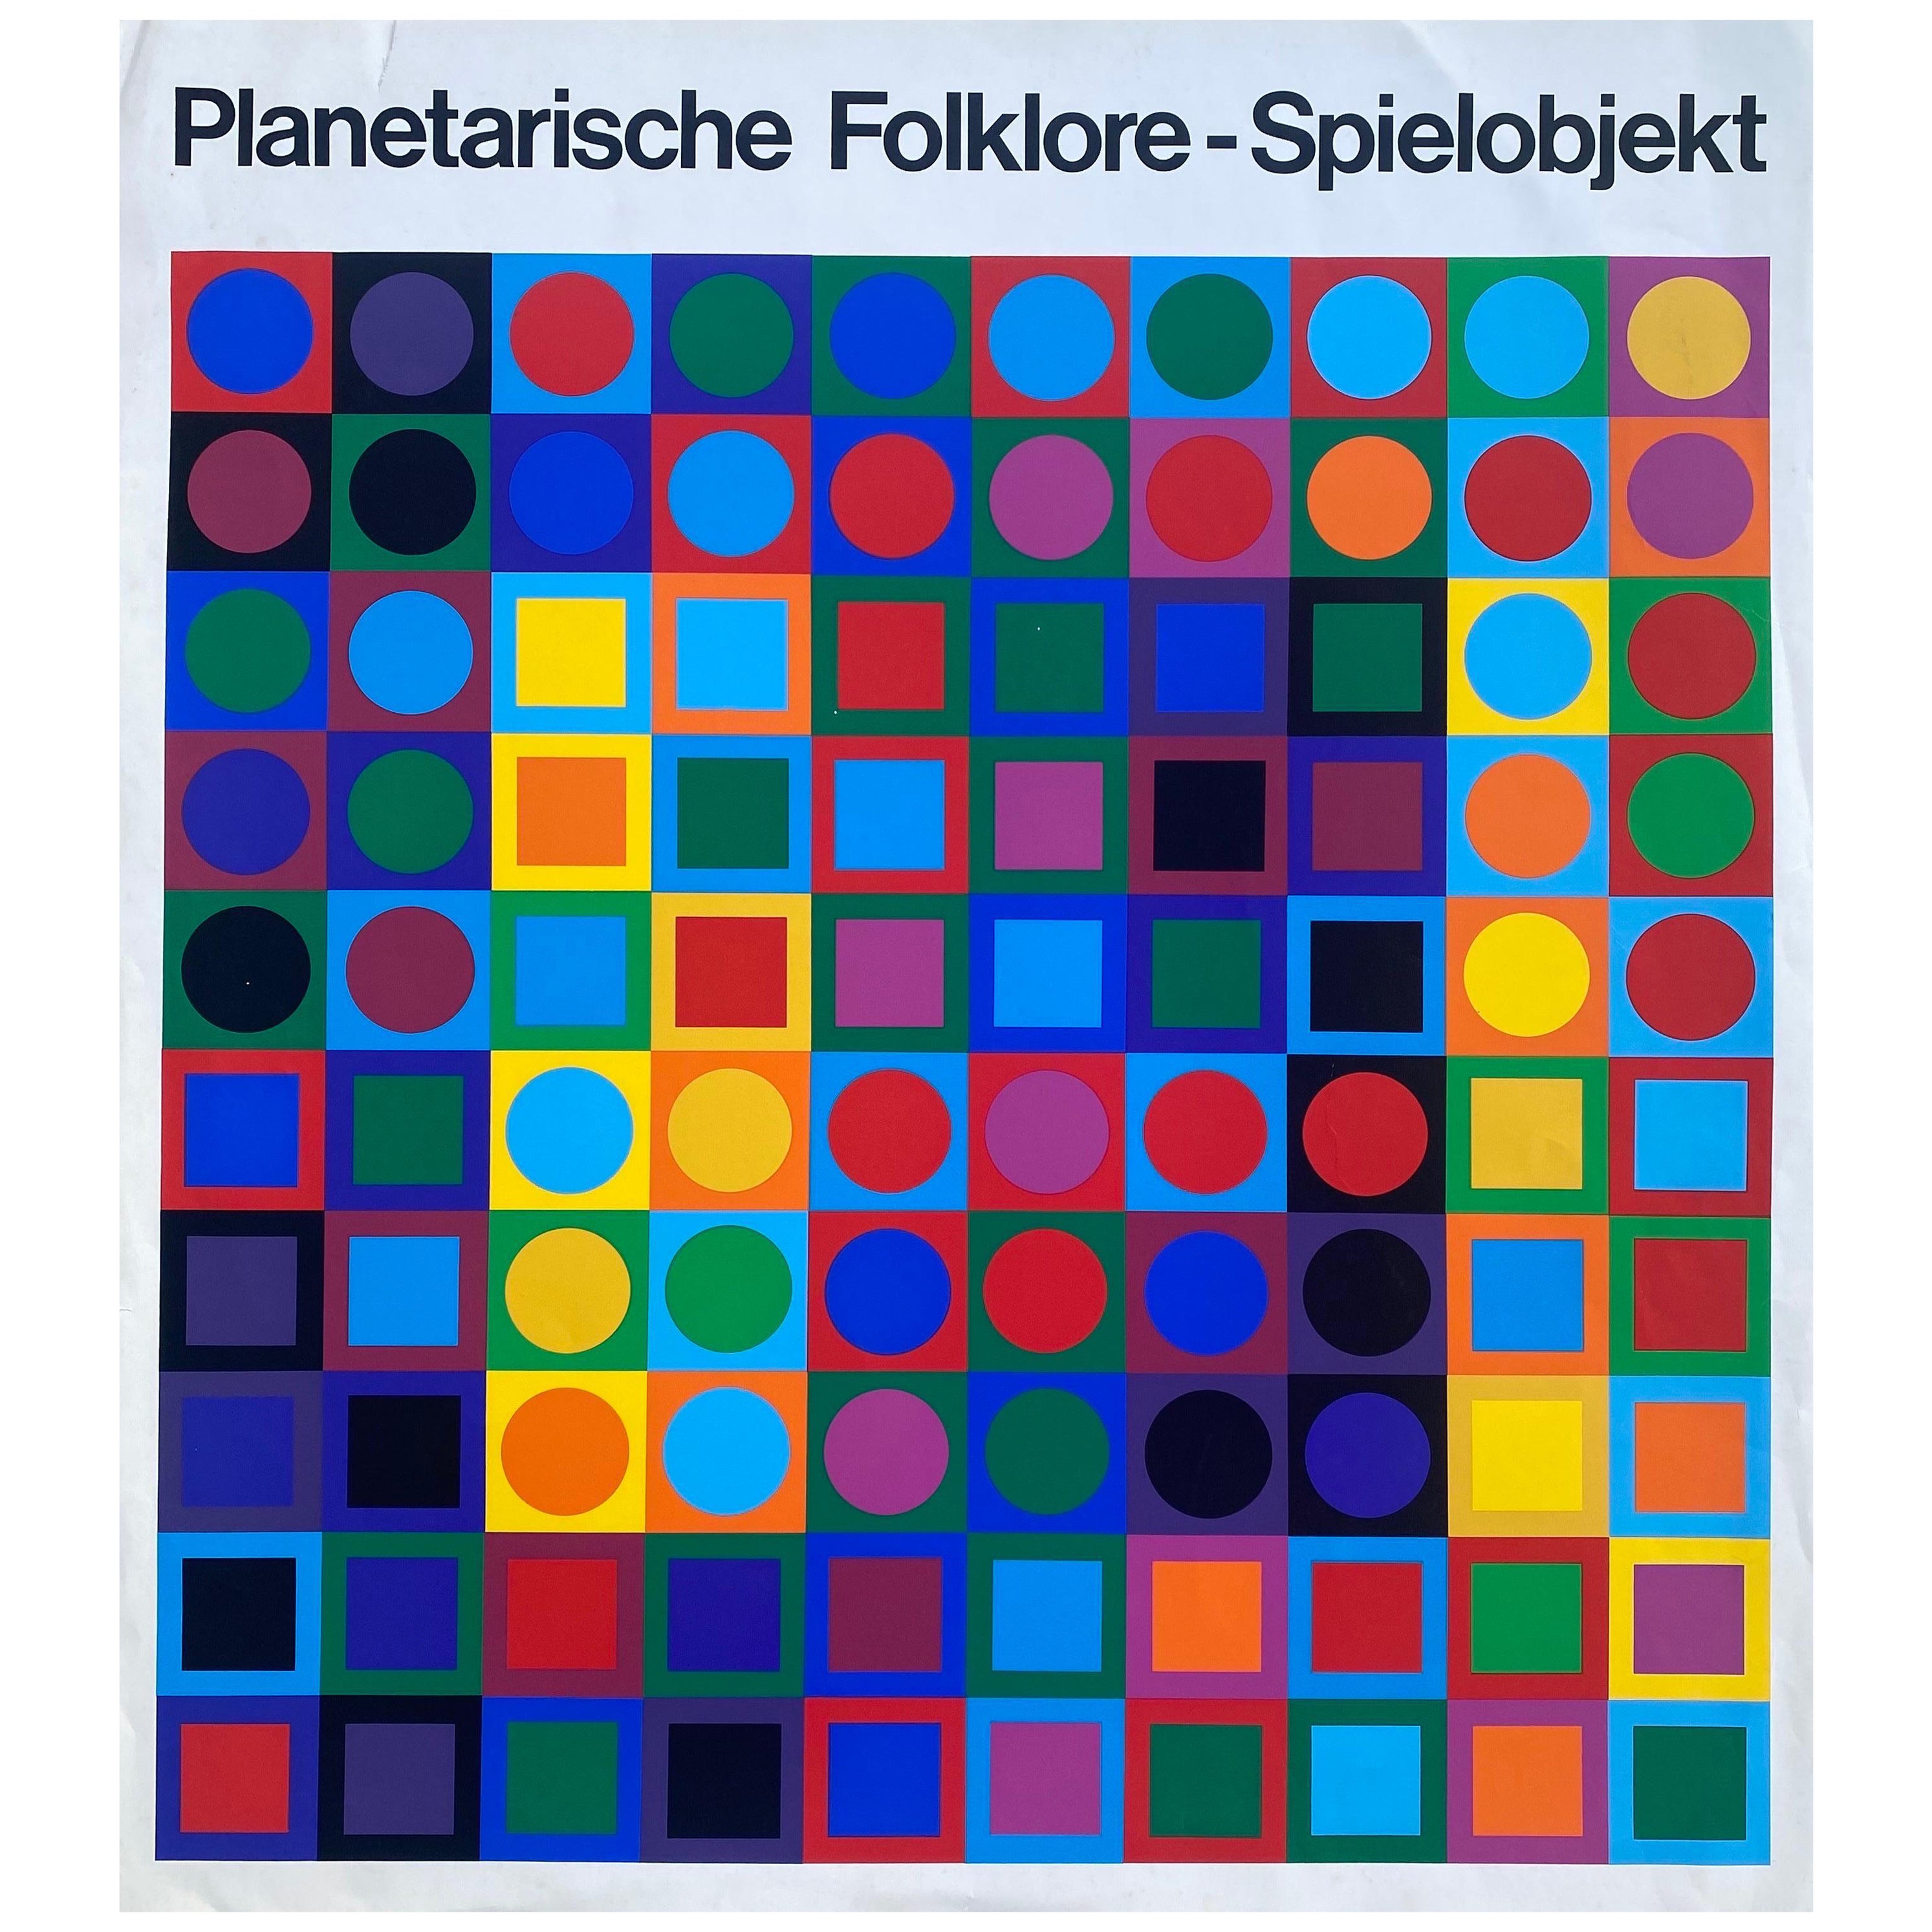 Circa 1969 "Planetarische Folklore - Spielobjekt" After Victor Vasarely 